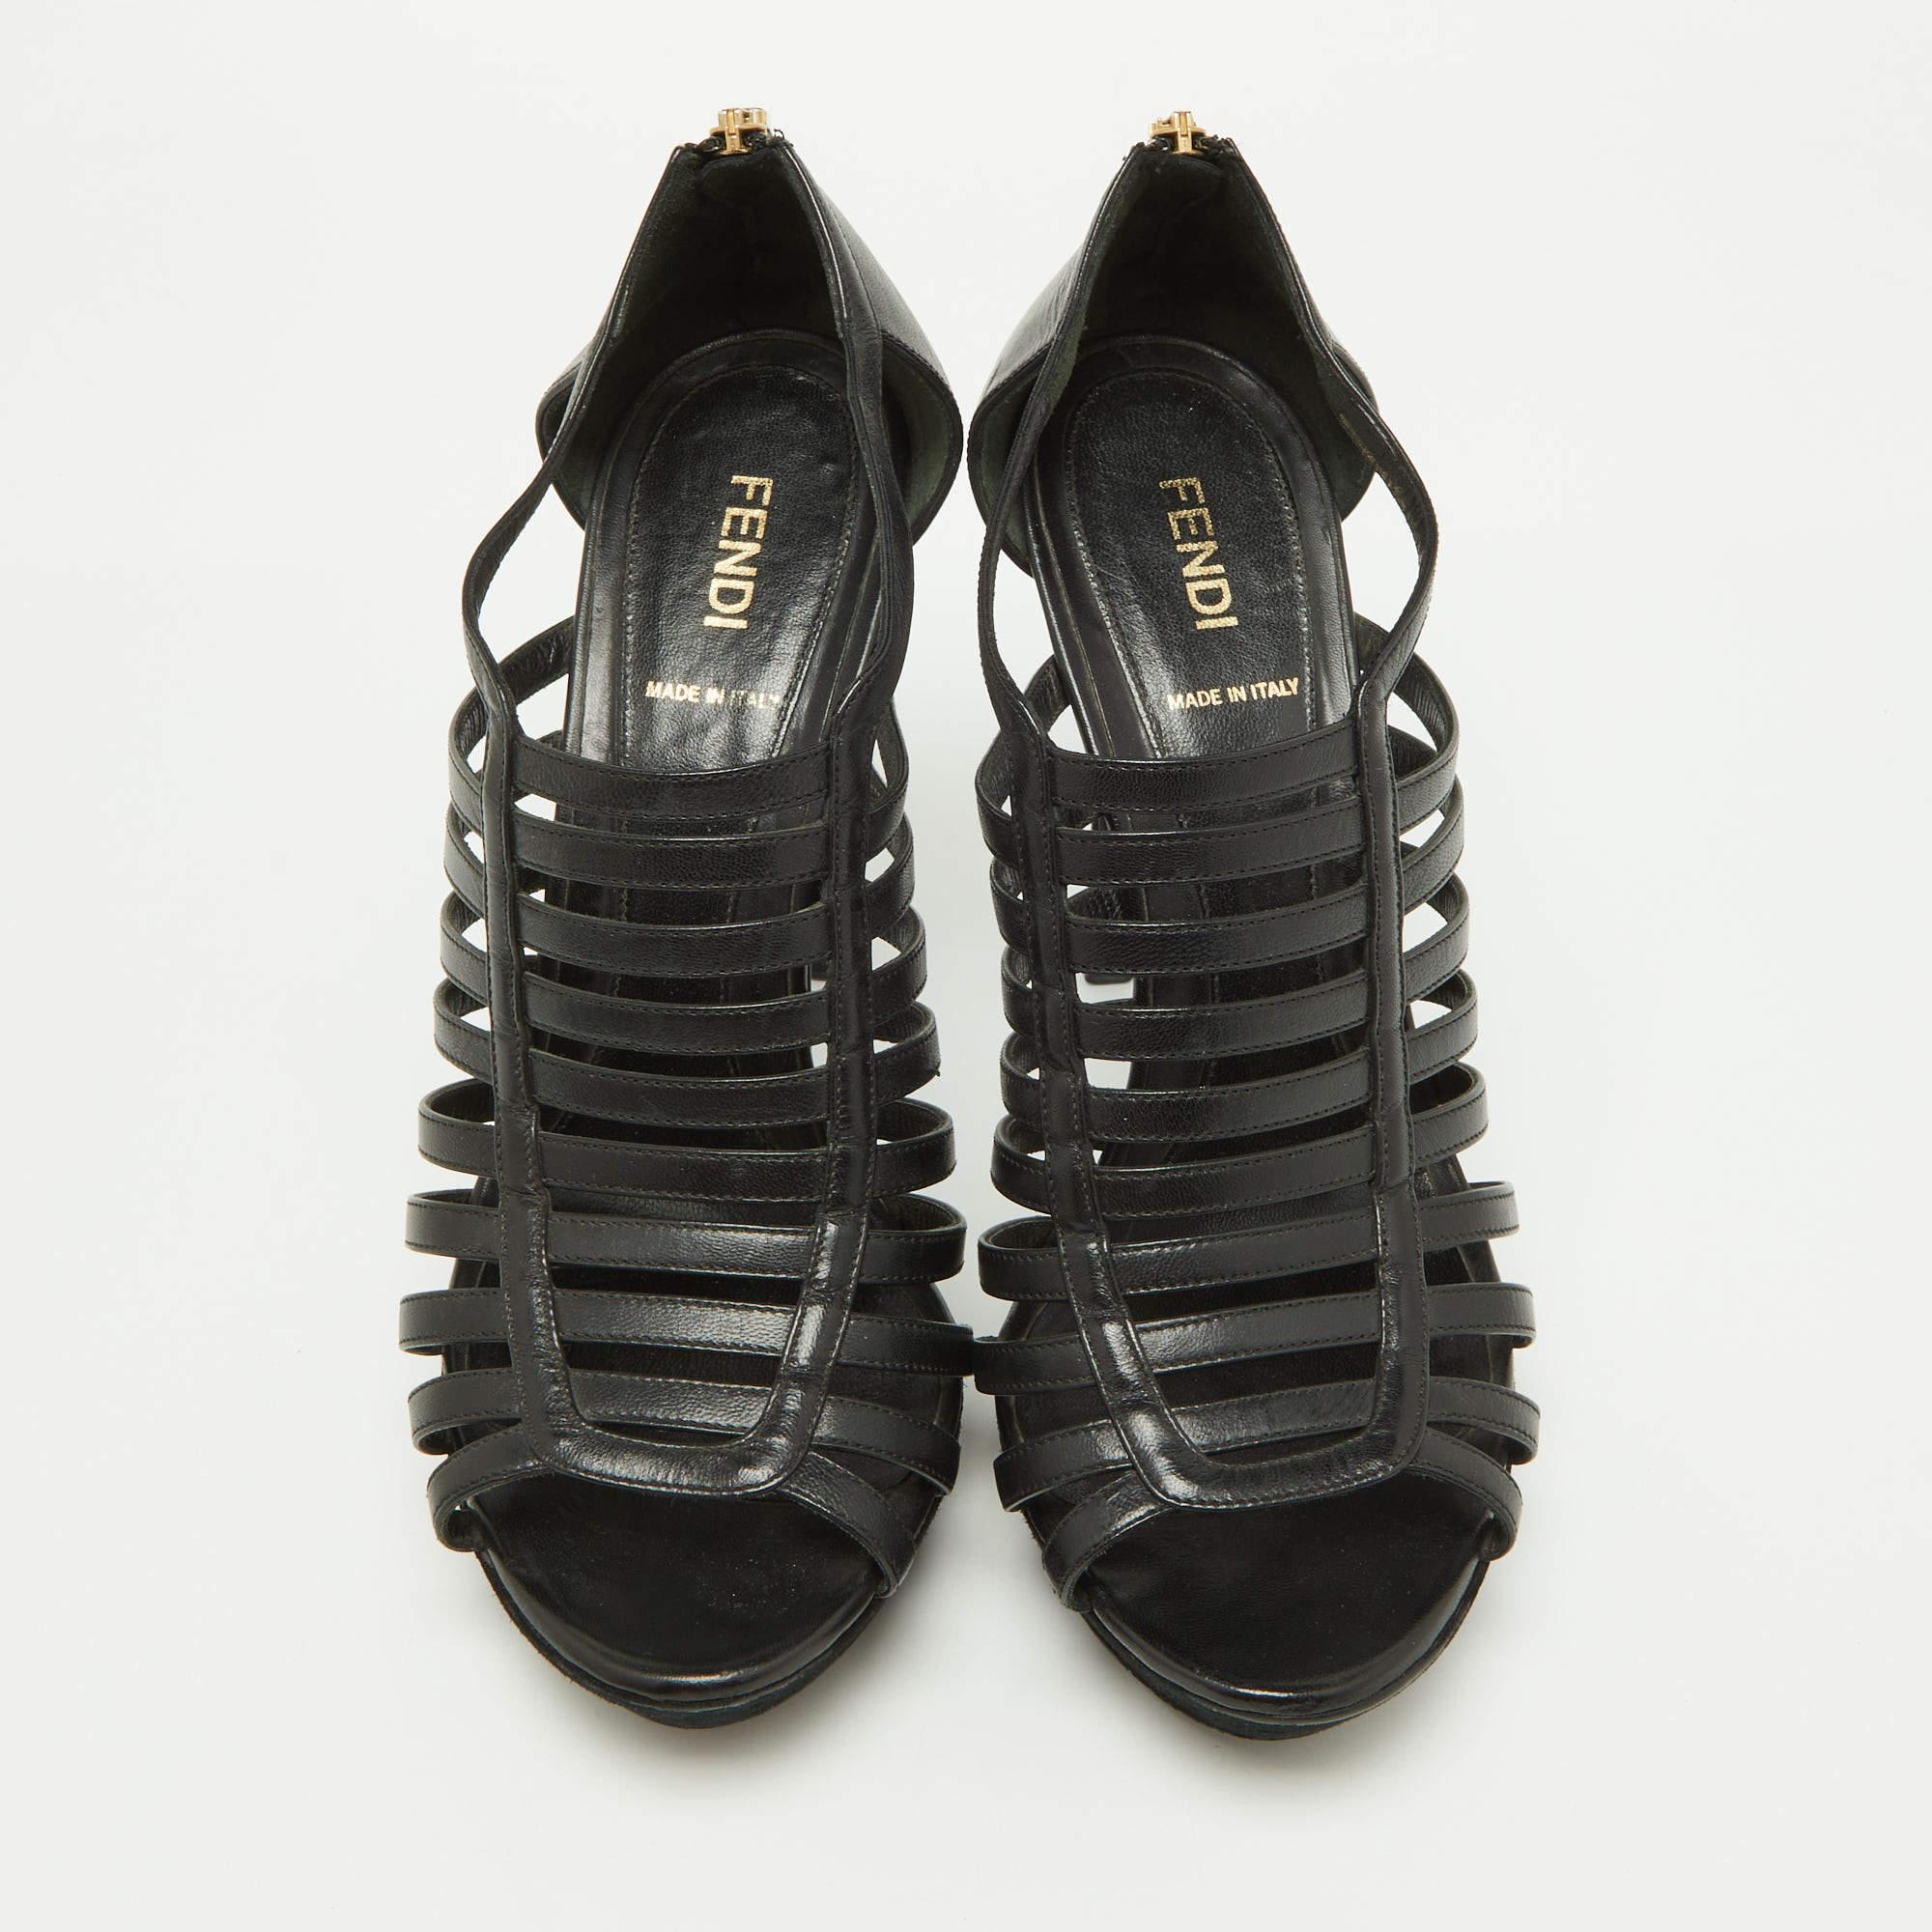 Fendi Black Leather Strappy Platform Sandals Size 39.5 In Good Condition For Sale In Dubai, Al Qouz 2